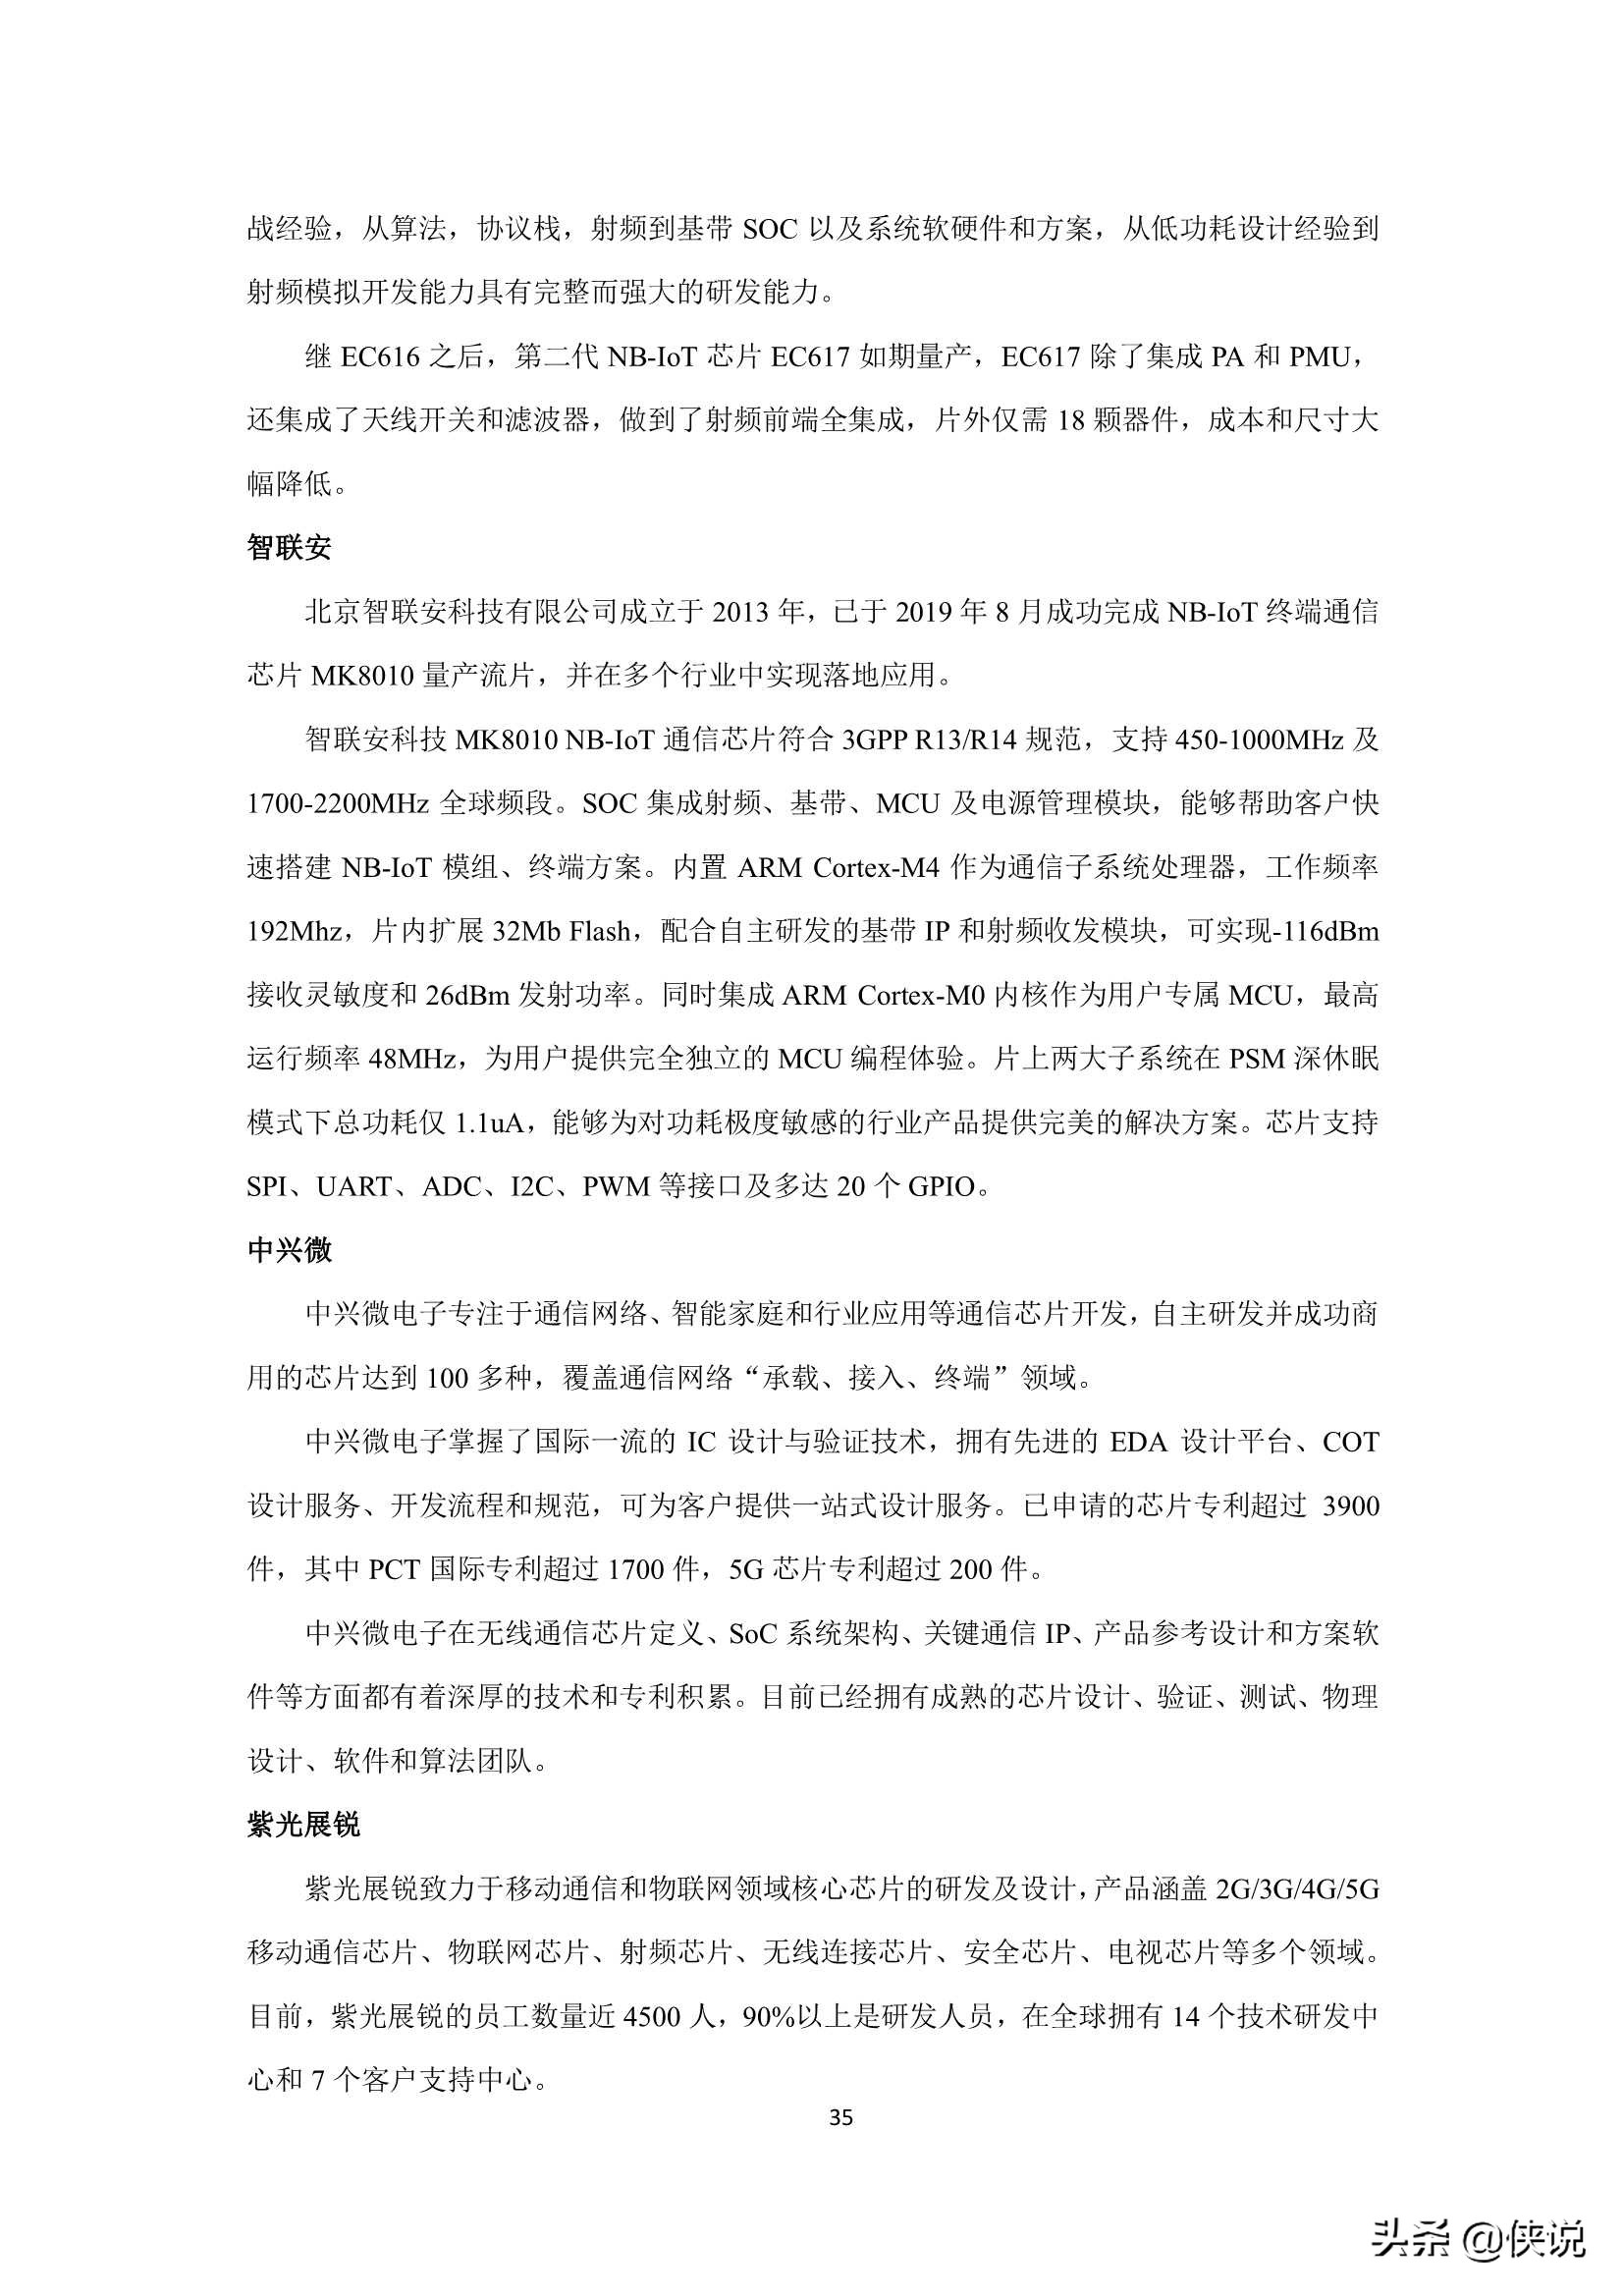 2021年中国AIoT产业全景图谱（物联网智库）